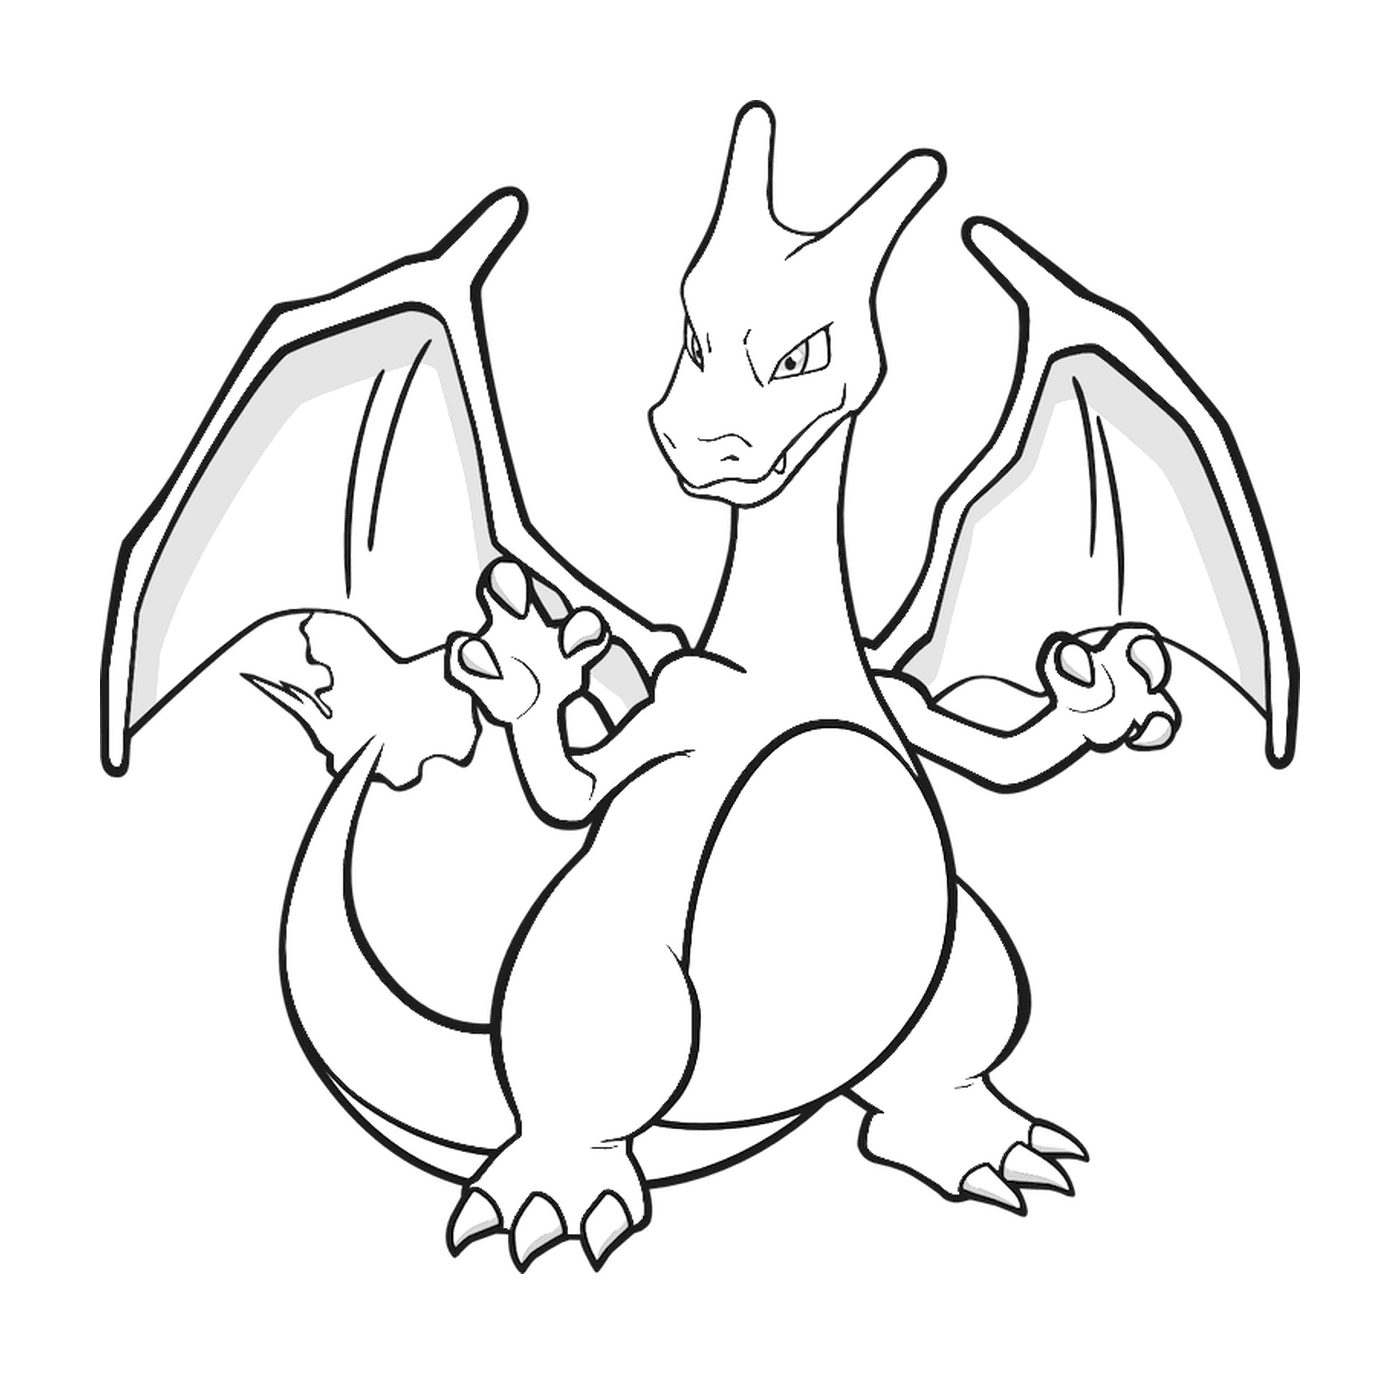  Dracaufeu, the Pokémon dragon 